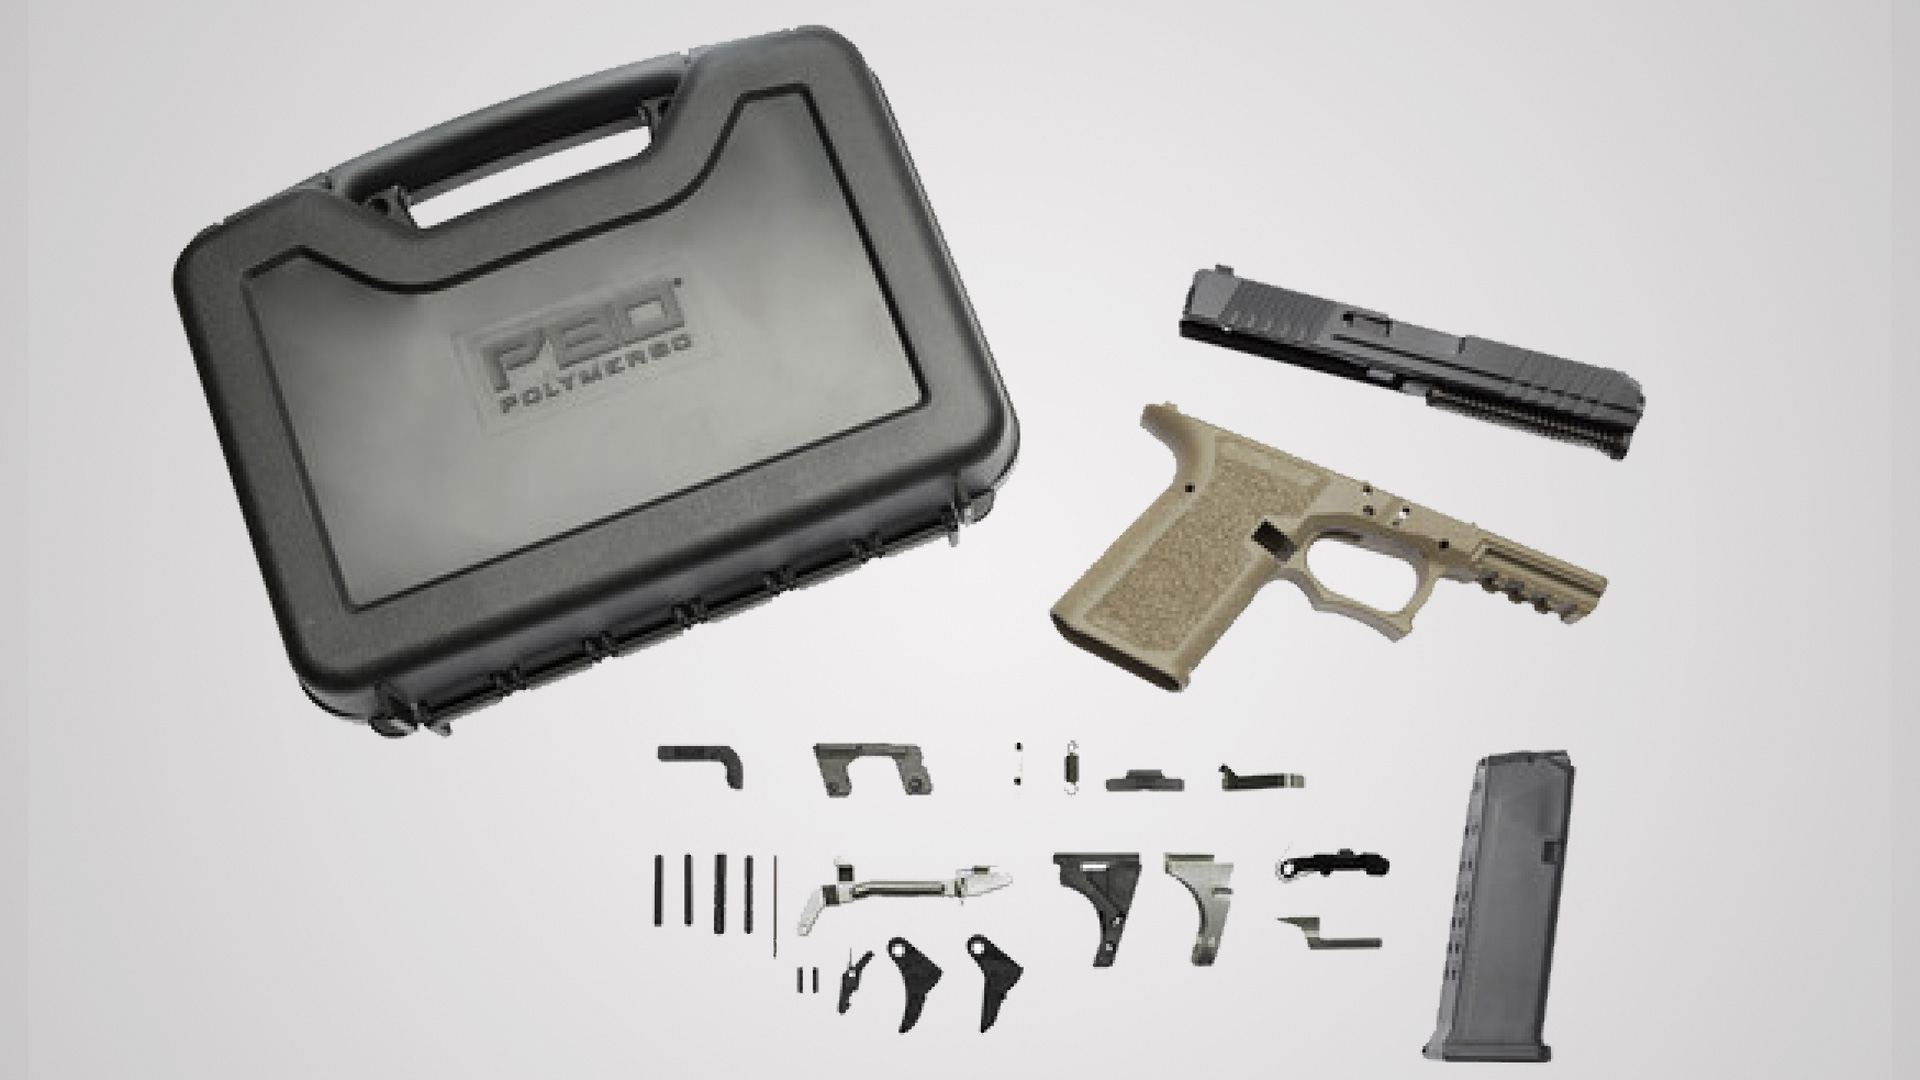 Slide Lock Spring for Glock Gen 5, 80% Compatible Pistols